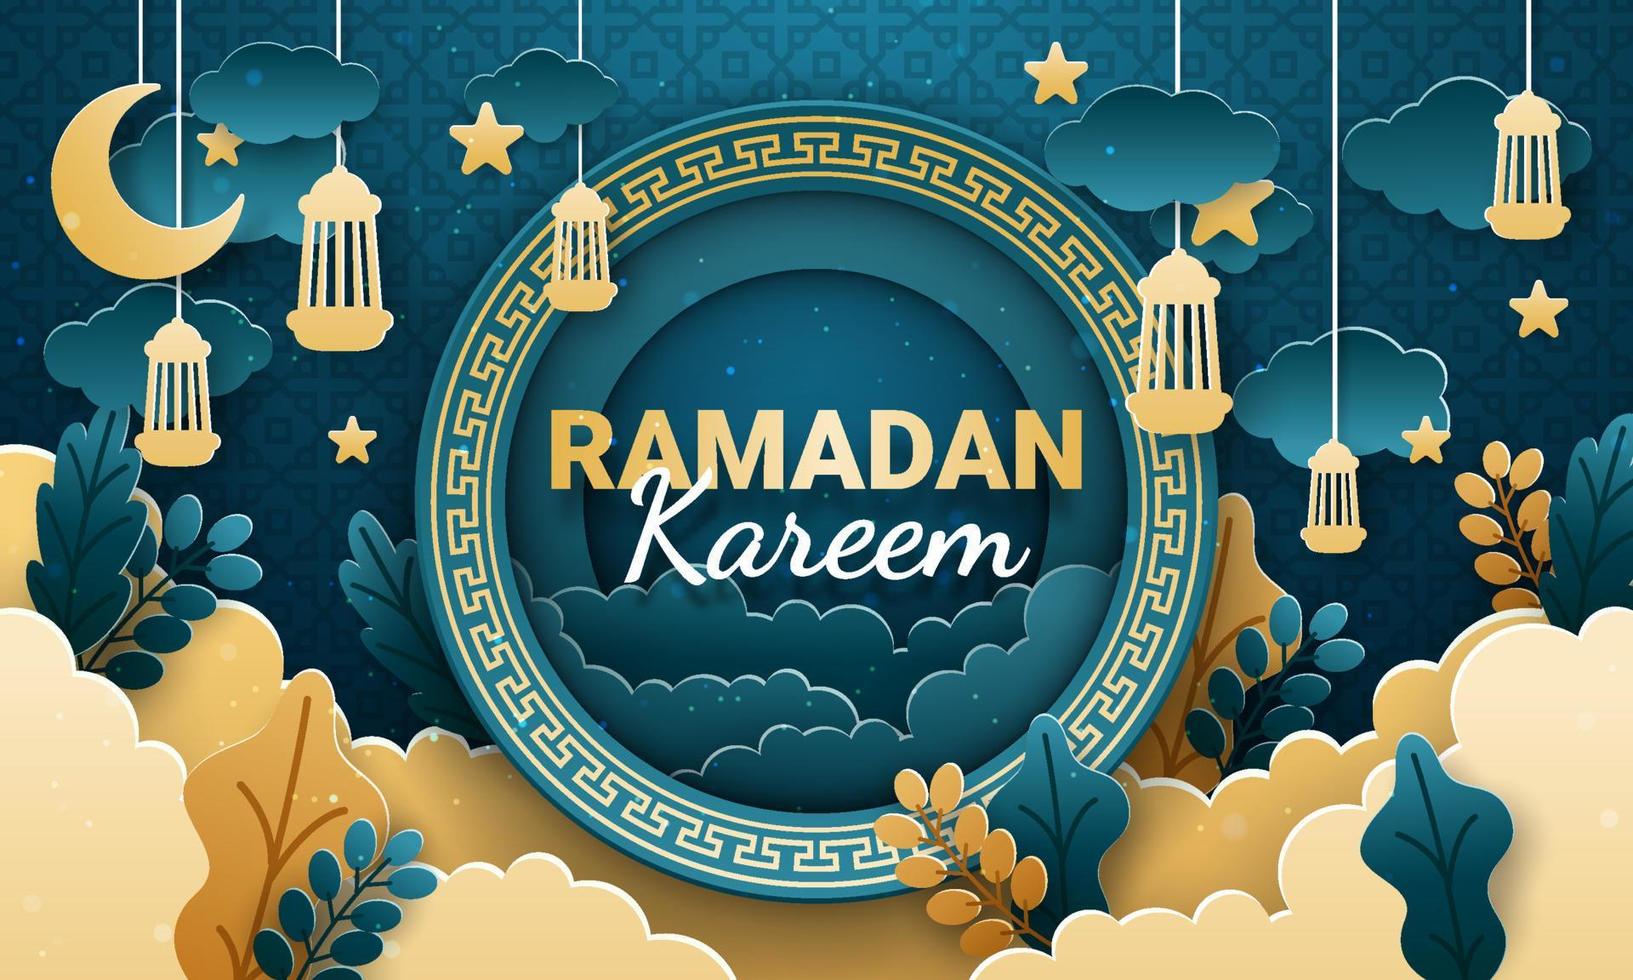 vetor de corte de papel ramadan kareem. banner ou pôster com ornamento de lanterna, estrela e nuvem, adequado para celebrar eventos do ramadã.